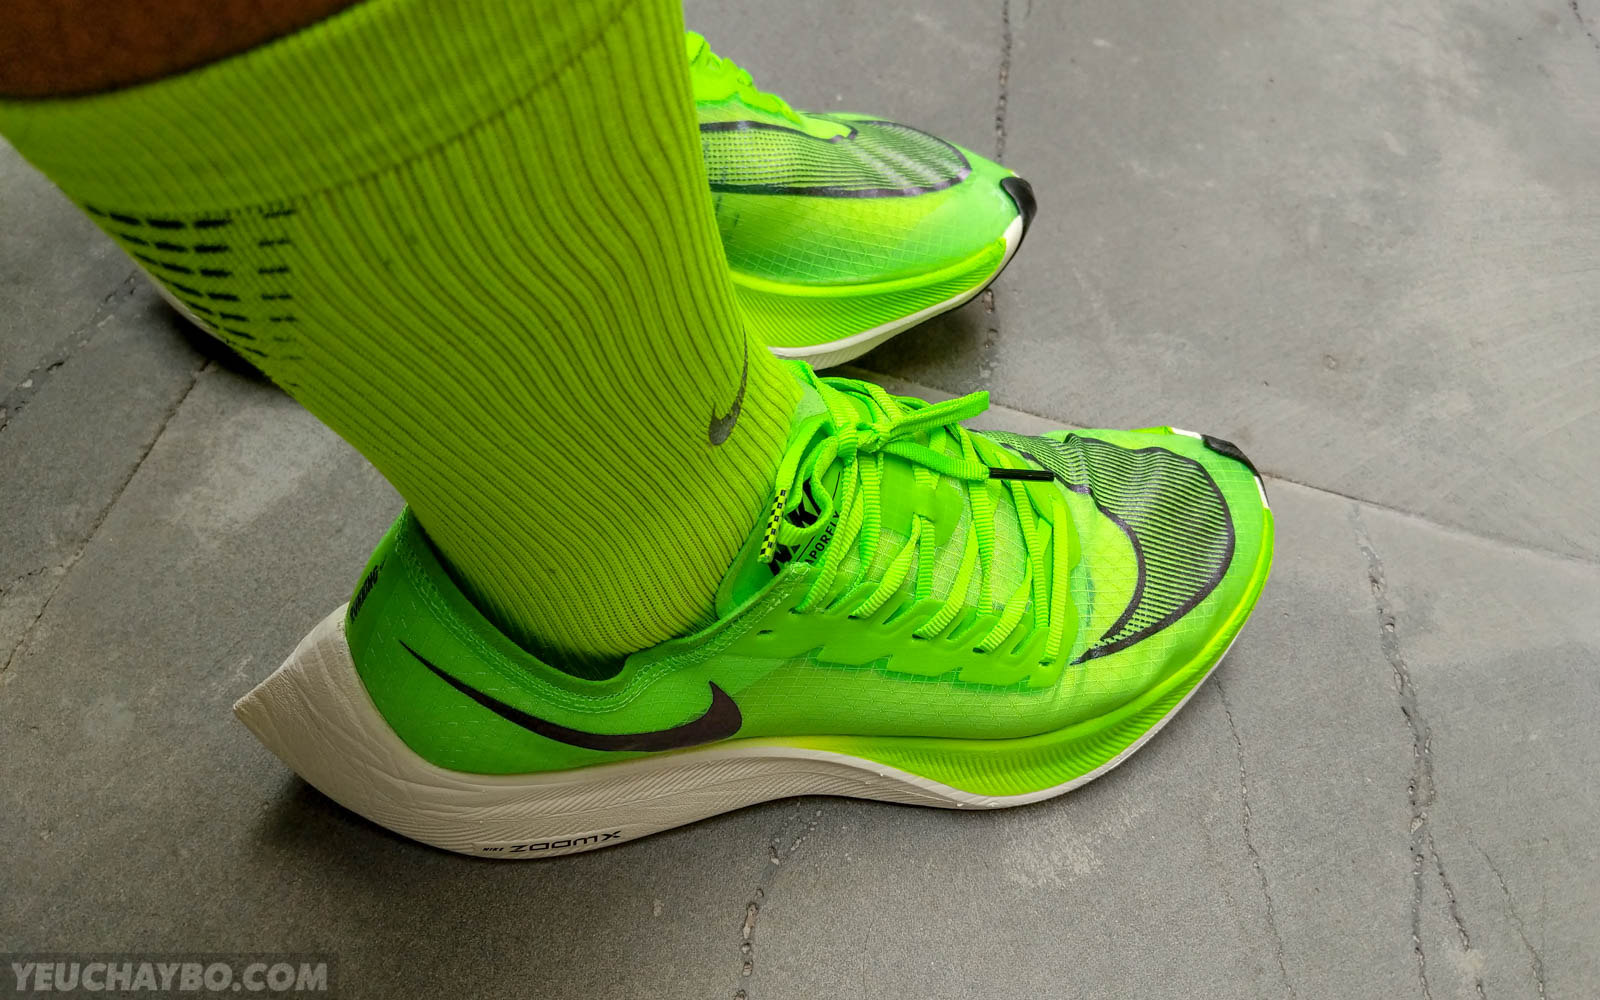 Trên chân Nike Vaporfly NEXT% - Êm hơn, nhẹ hơn, thoải mái hơn - tren chan nike zoomx vaporfly next percent 28